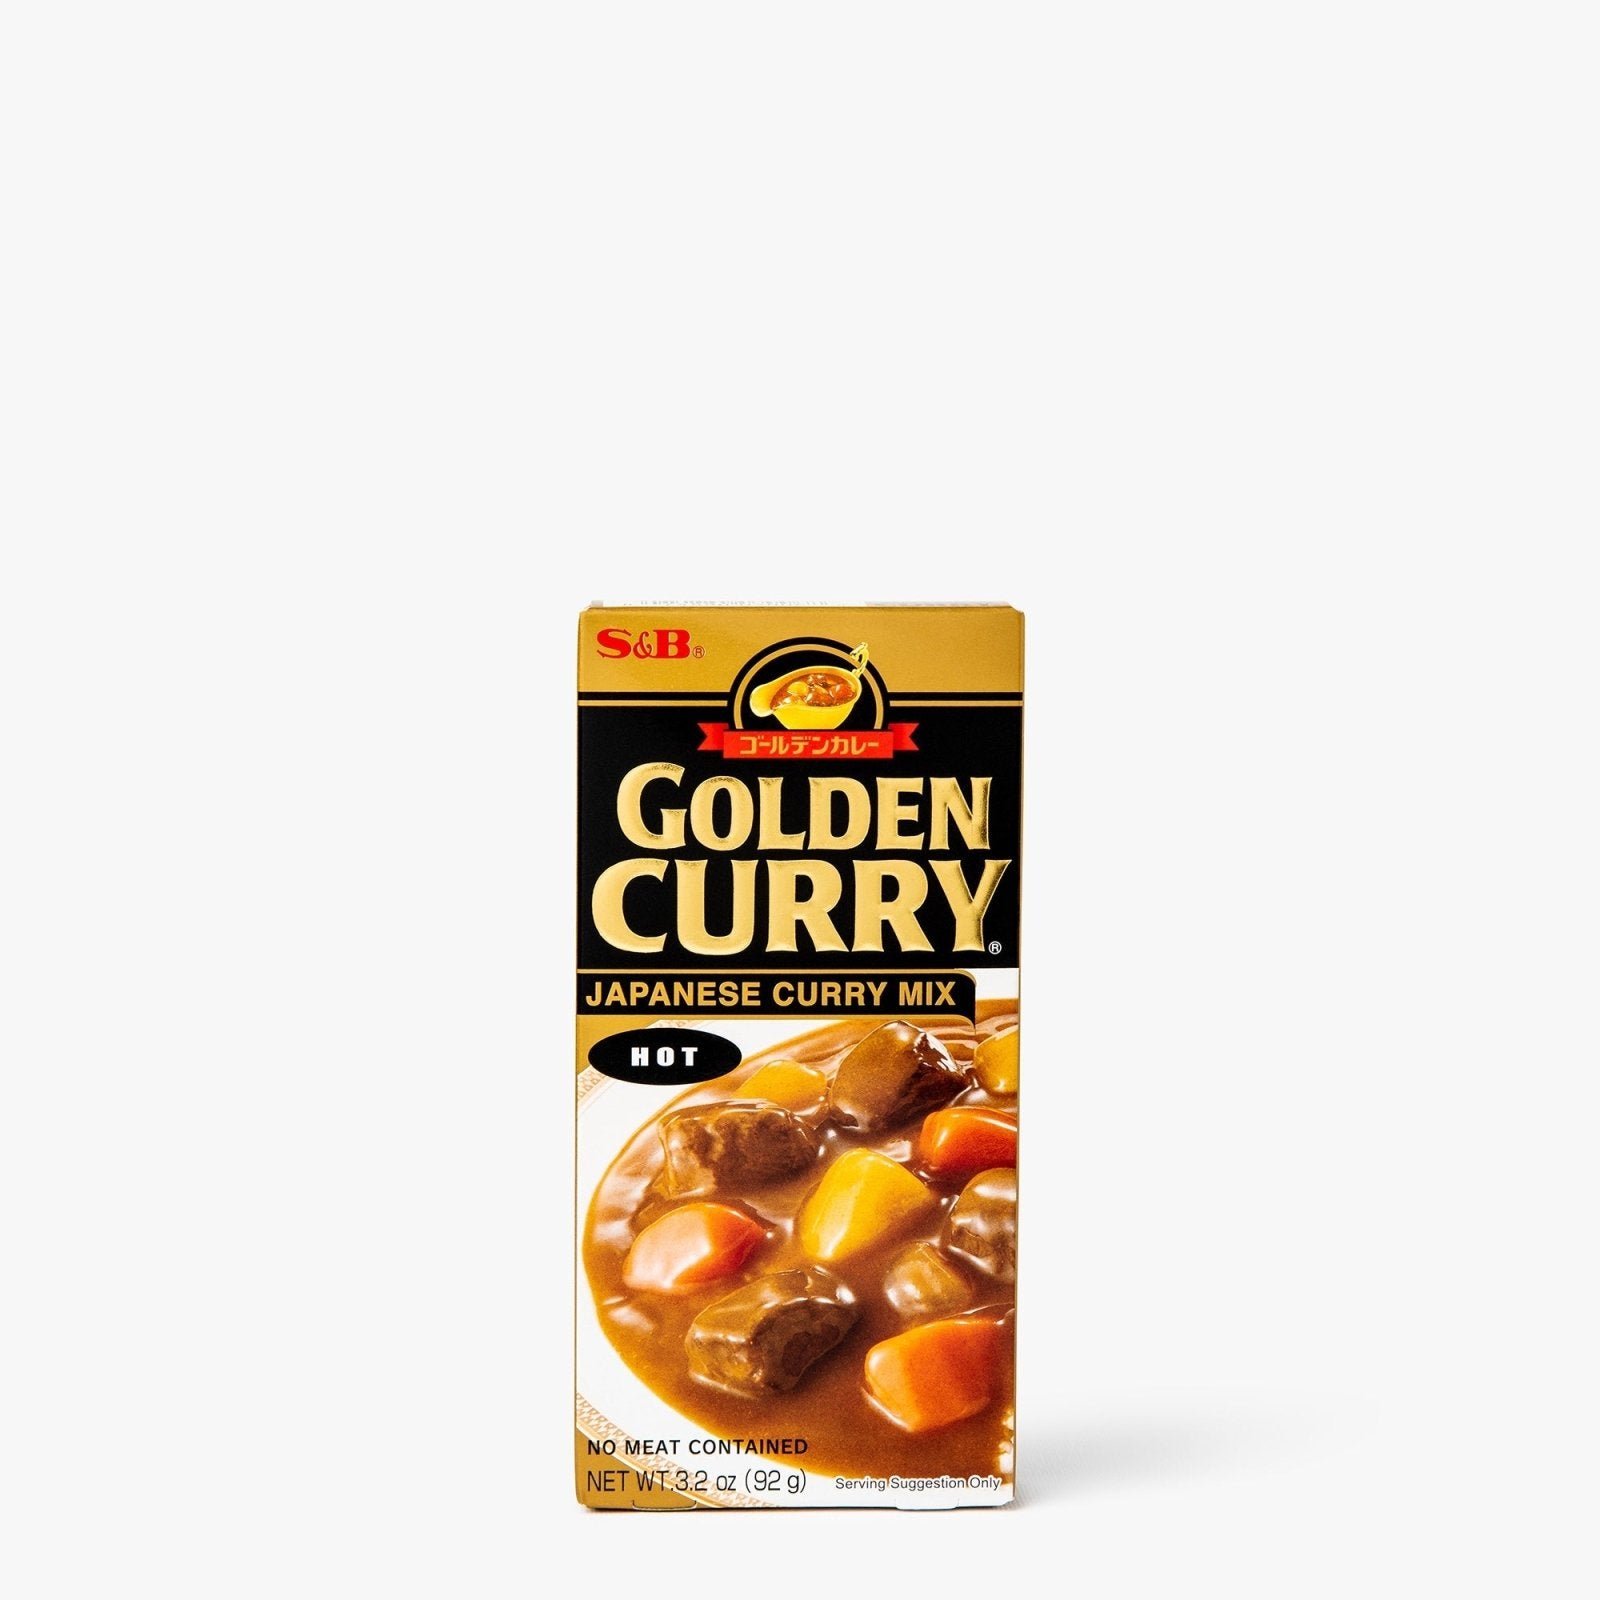 Sauce pour curry piquant (hot) en tablette - 92g - S&B - iRASSHAi